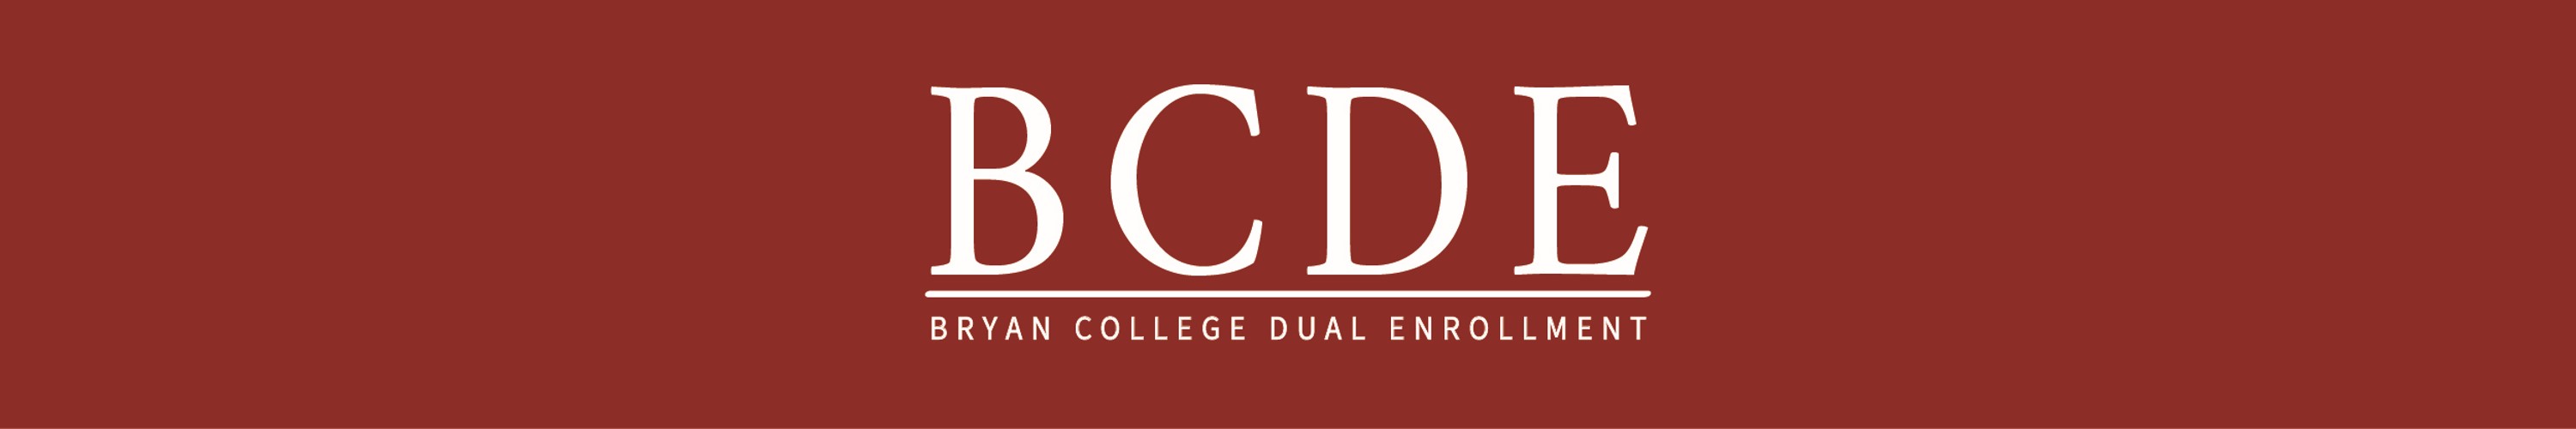 BC-Dual-Enrollment-Logo-header